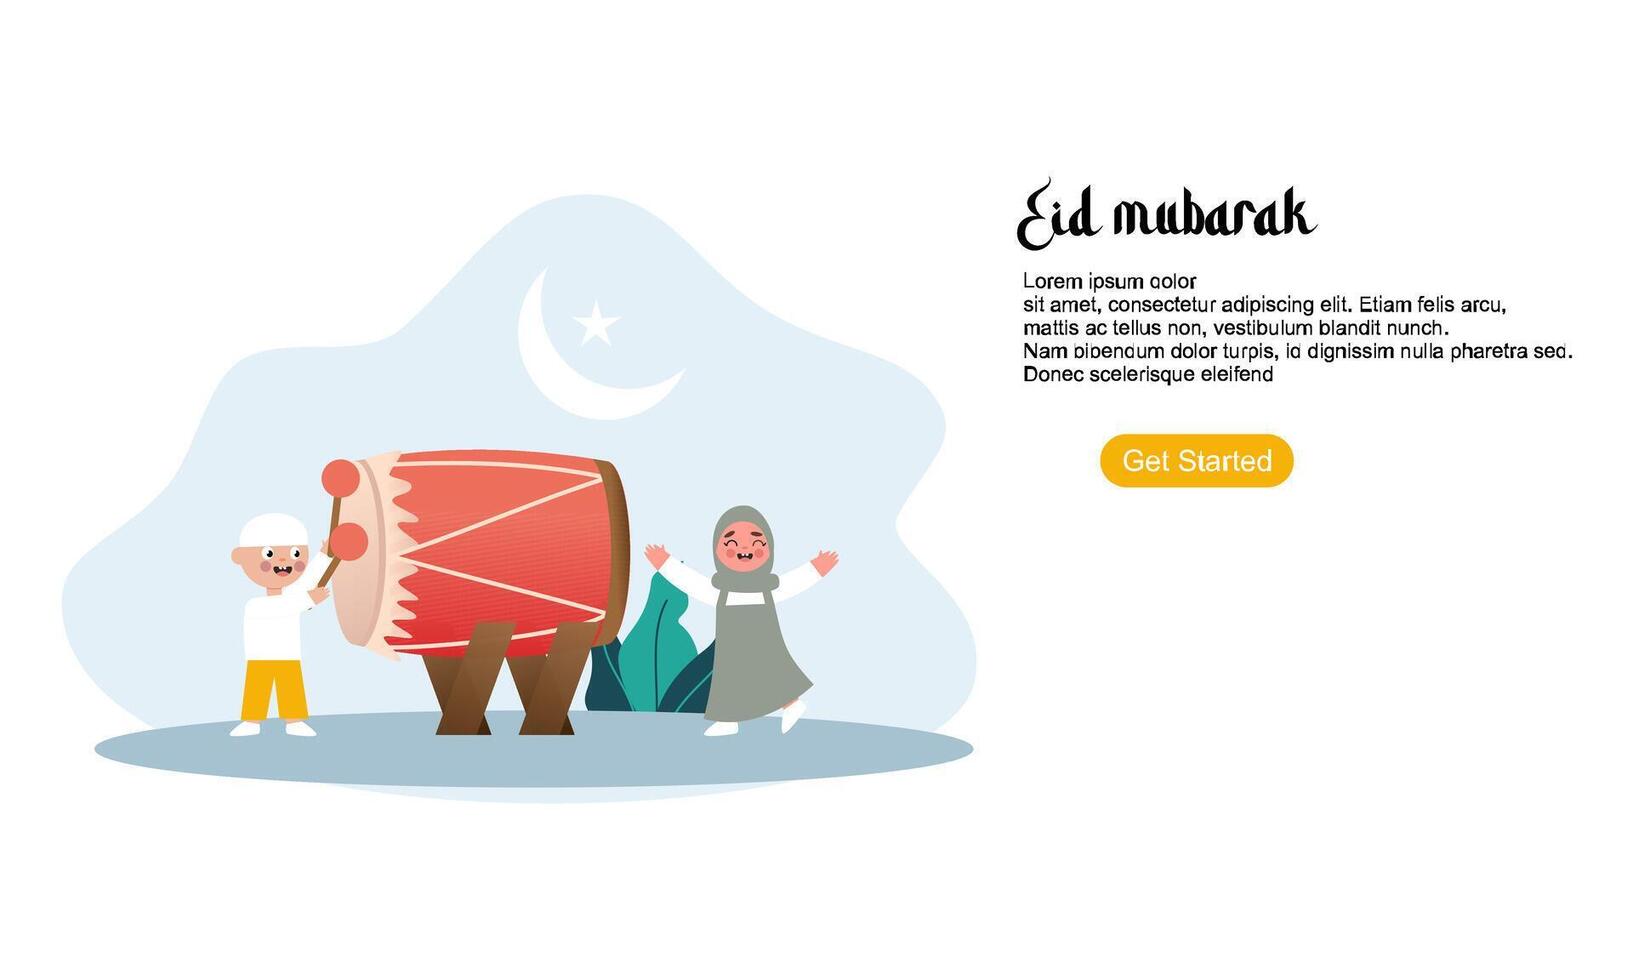 gelukkige eid mubarak of ramadan-groet met karakter van mensen vector